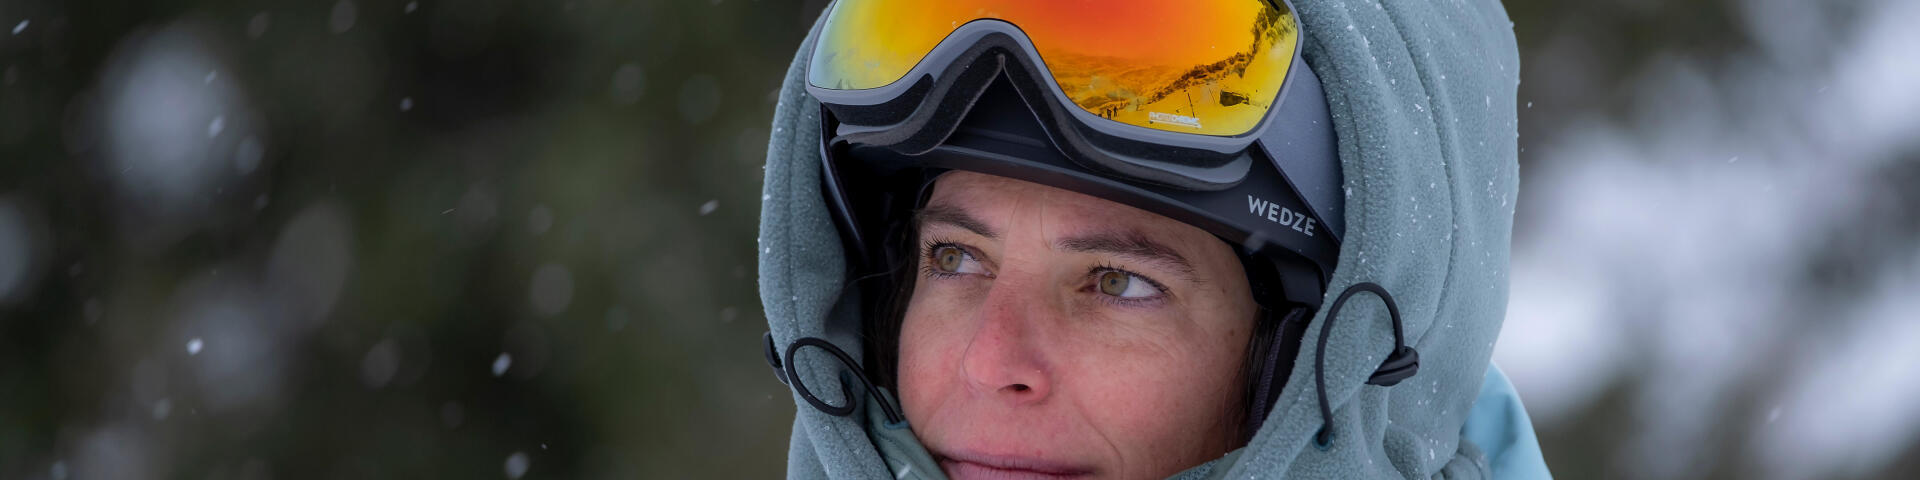 Une femme qui regarde la pente de ski avec ses lunettes sur la tête